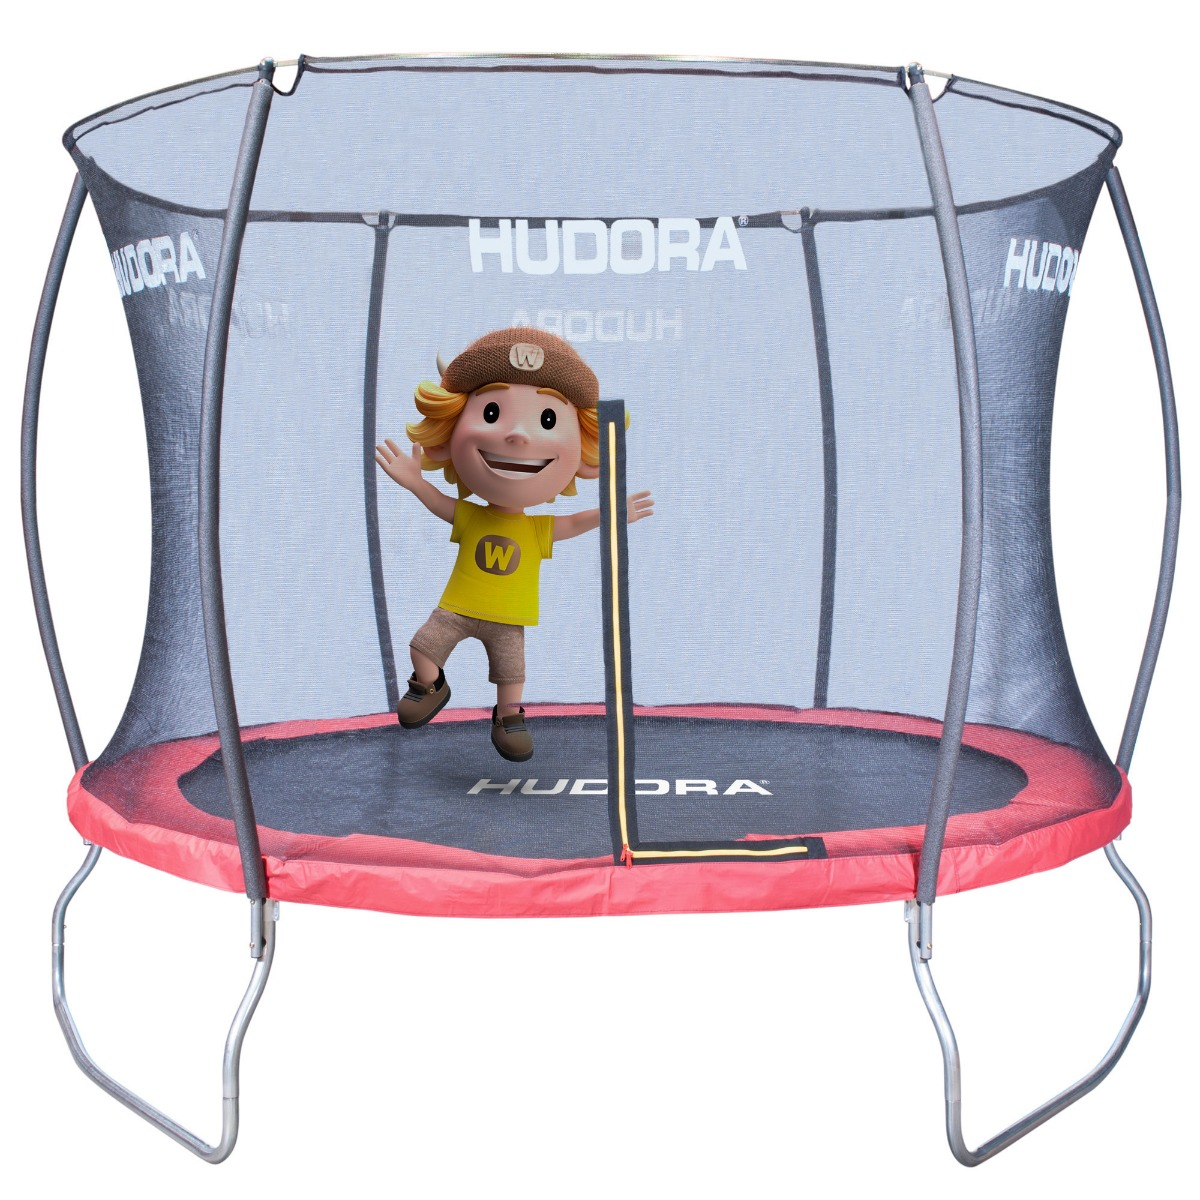 Trampolin für Kinder outdoor Hudora 300V Fantastic